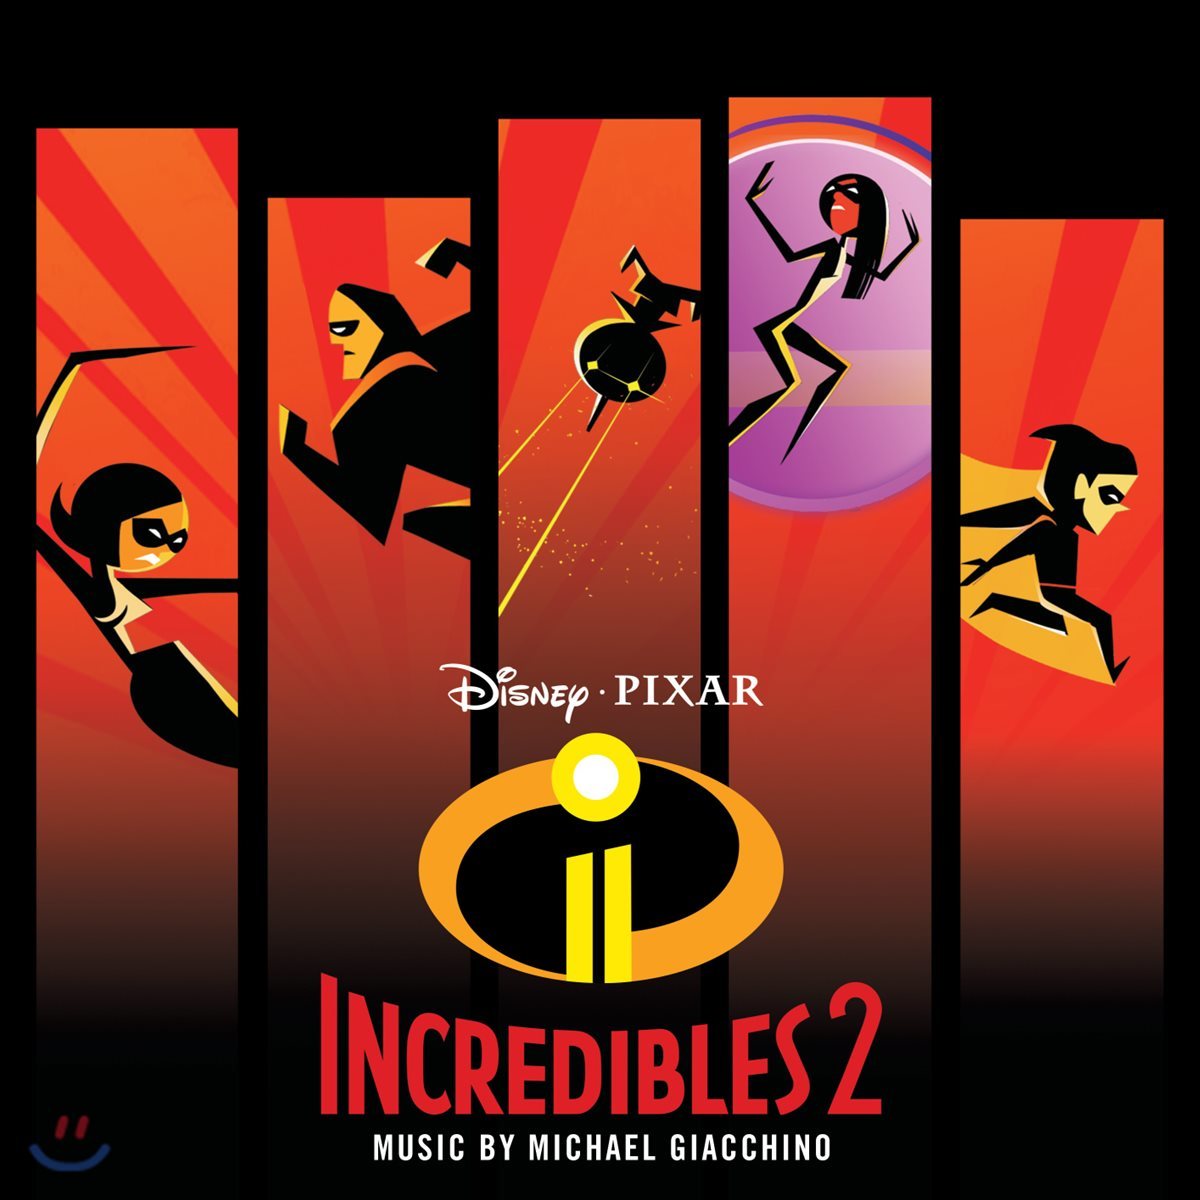 인크레더블 2 영화음악 (Incredible 2 OST by Michael Giacchino 마이클 지아치노)